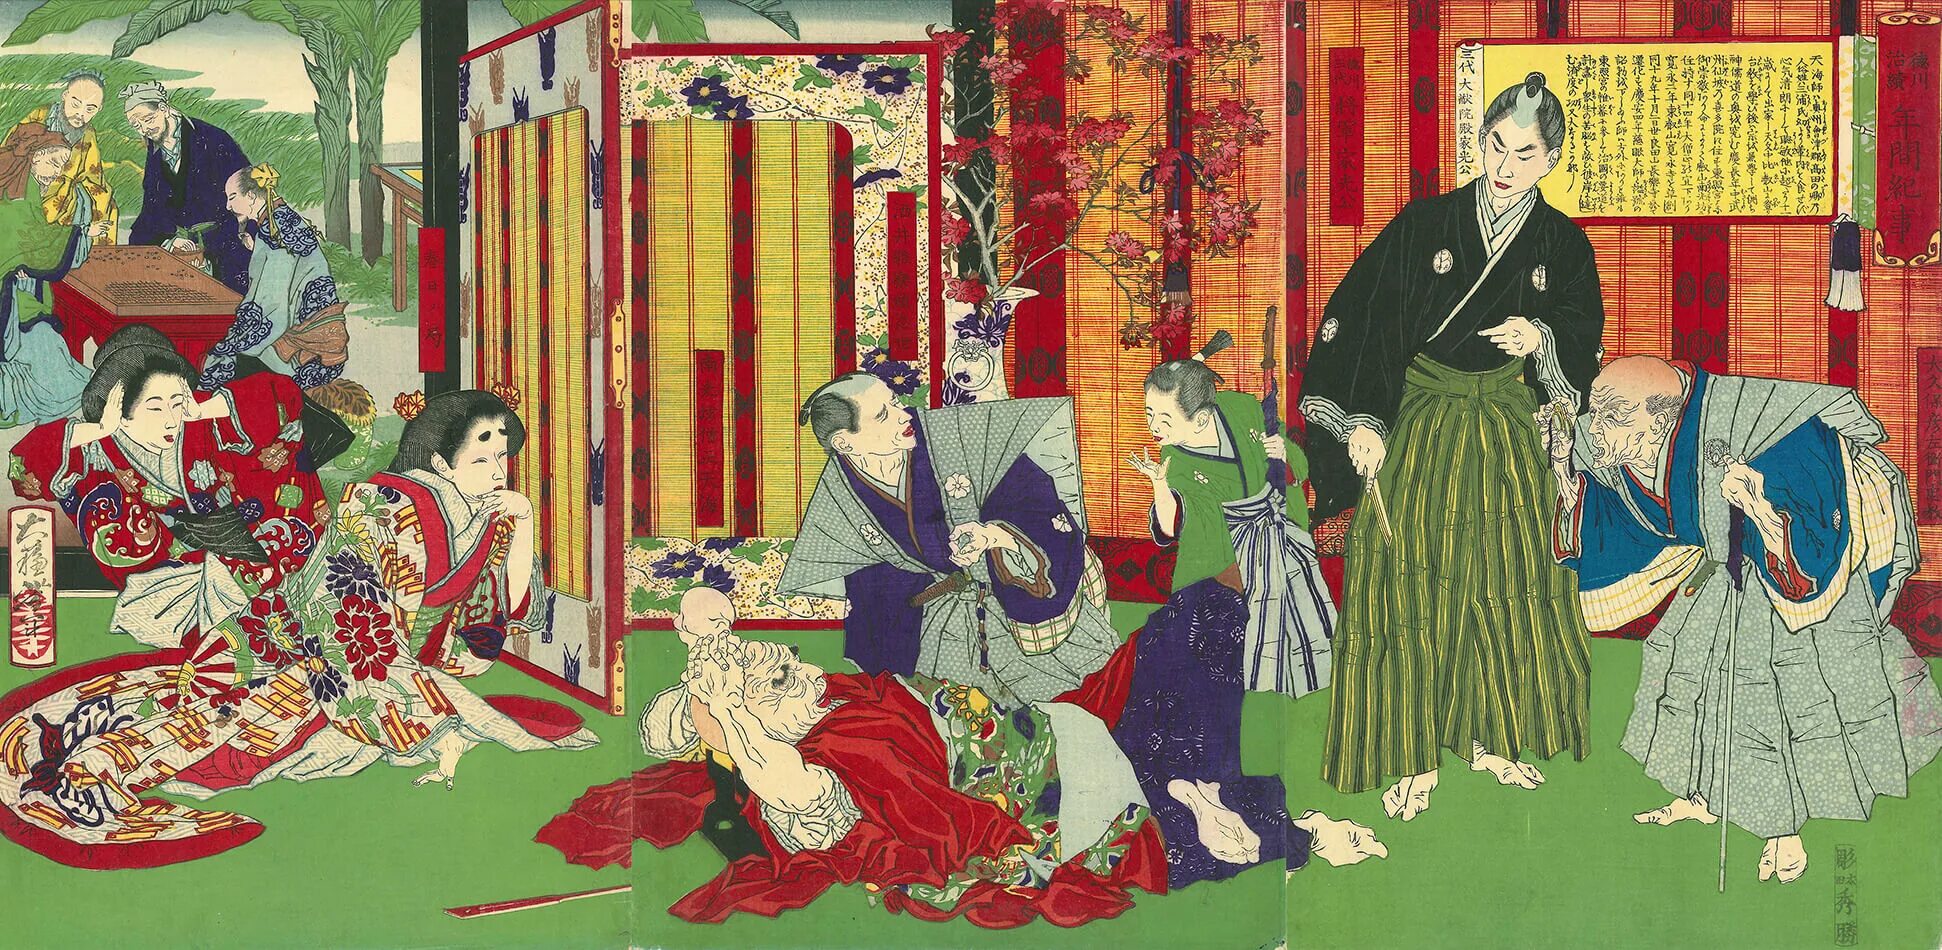 Япония 8 века. Период Эдо Токугава. Токугава укиё э. Культура эпохи Эдо, Япония 17-19 век. Эпоха сегуната в Японии.